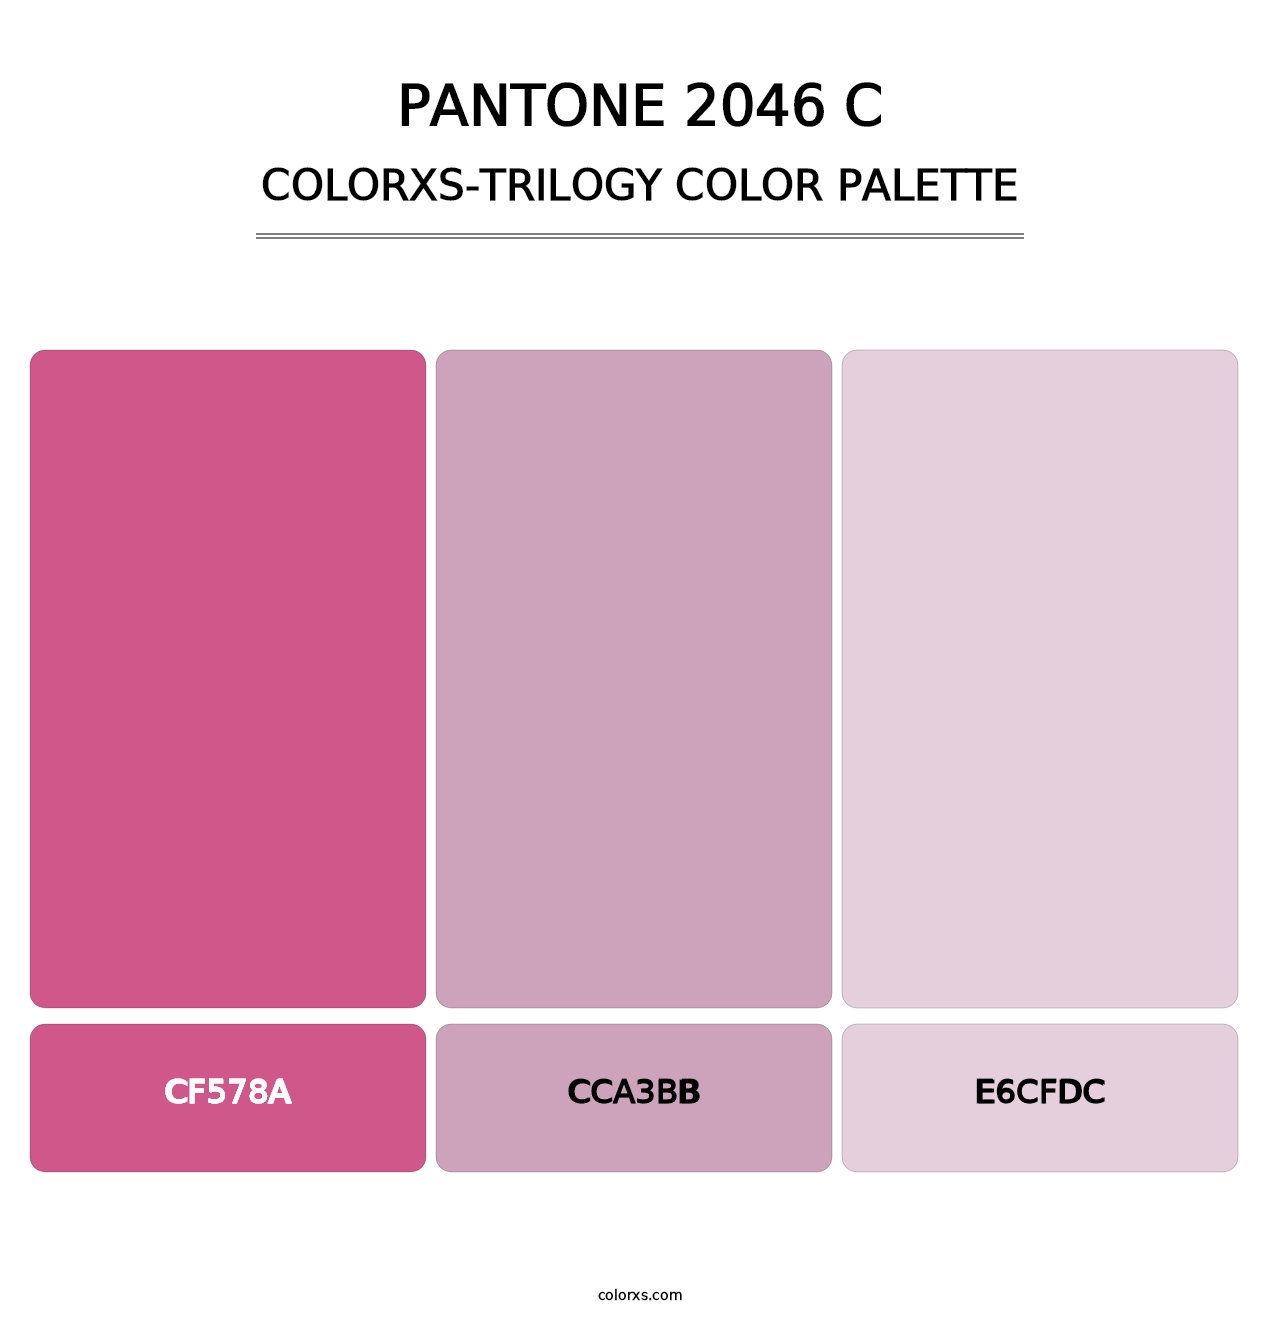 PANTONE 2046 C - Colorxs Trilogy Palette